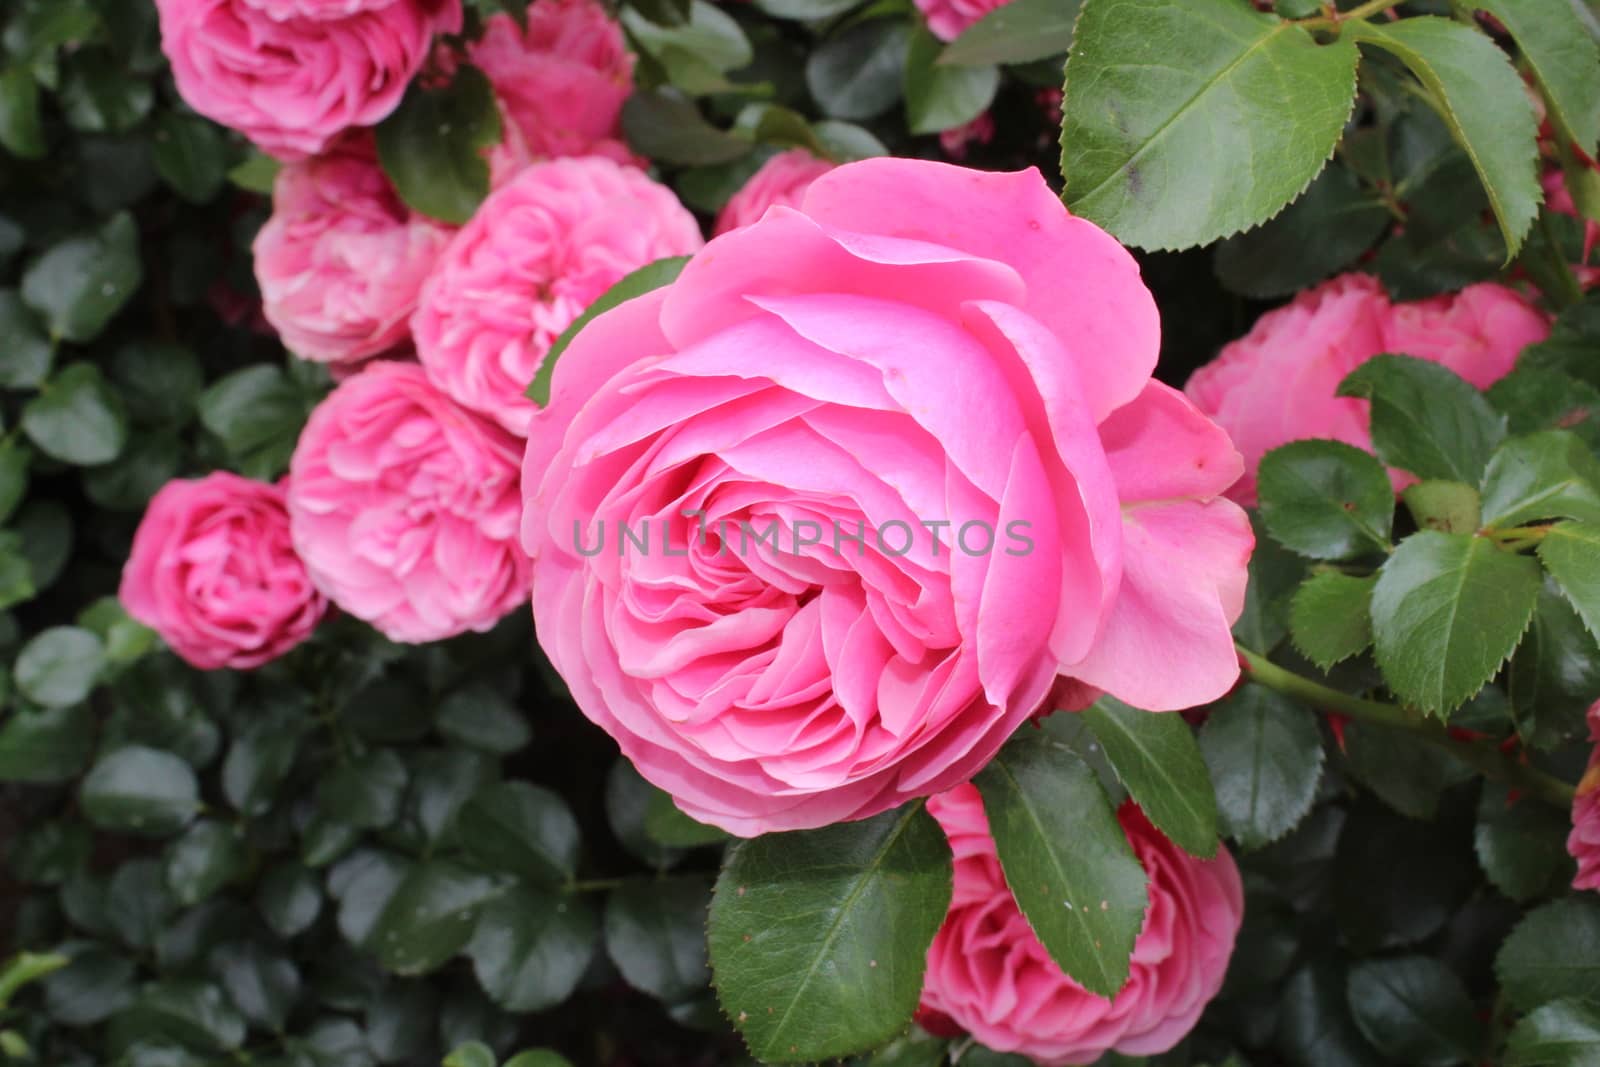 pink roses in the garden by martina_unbehauen